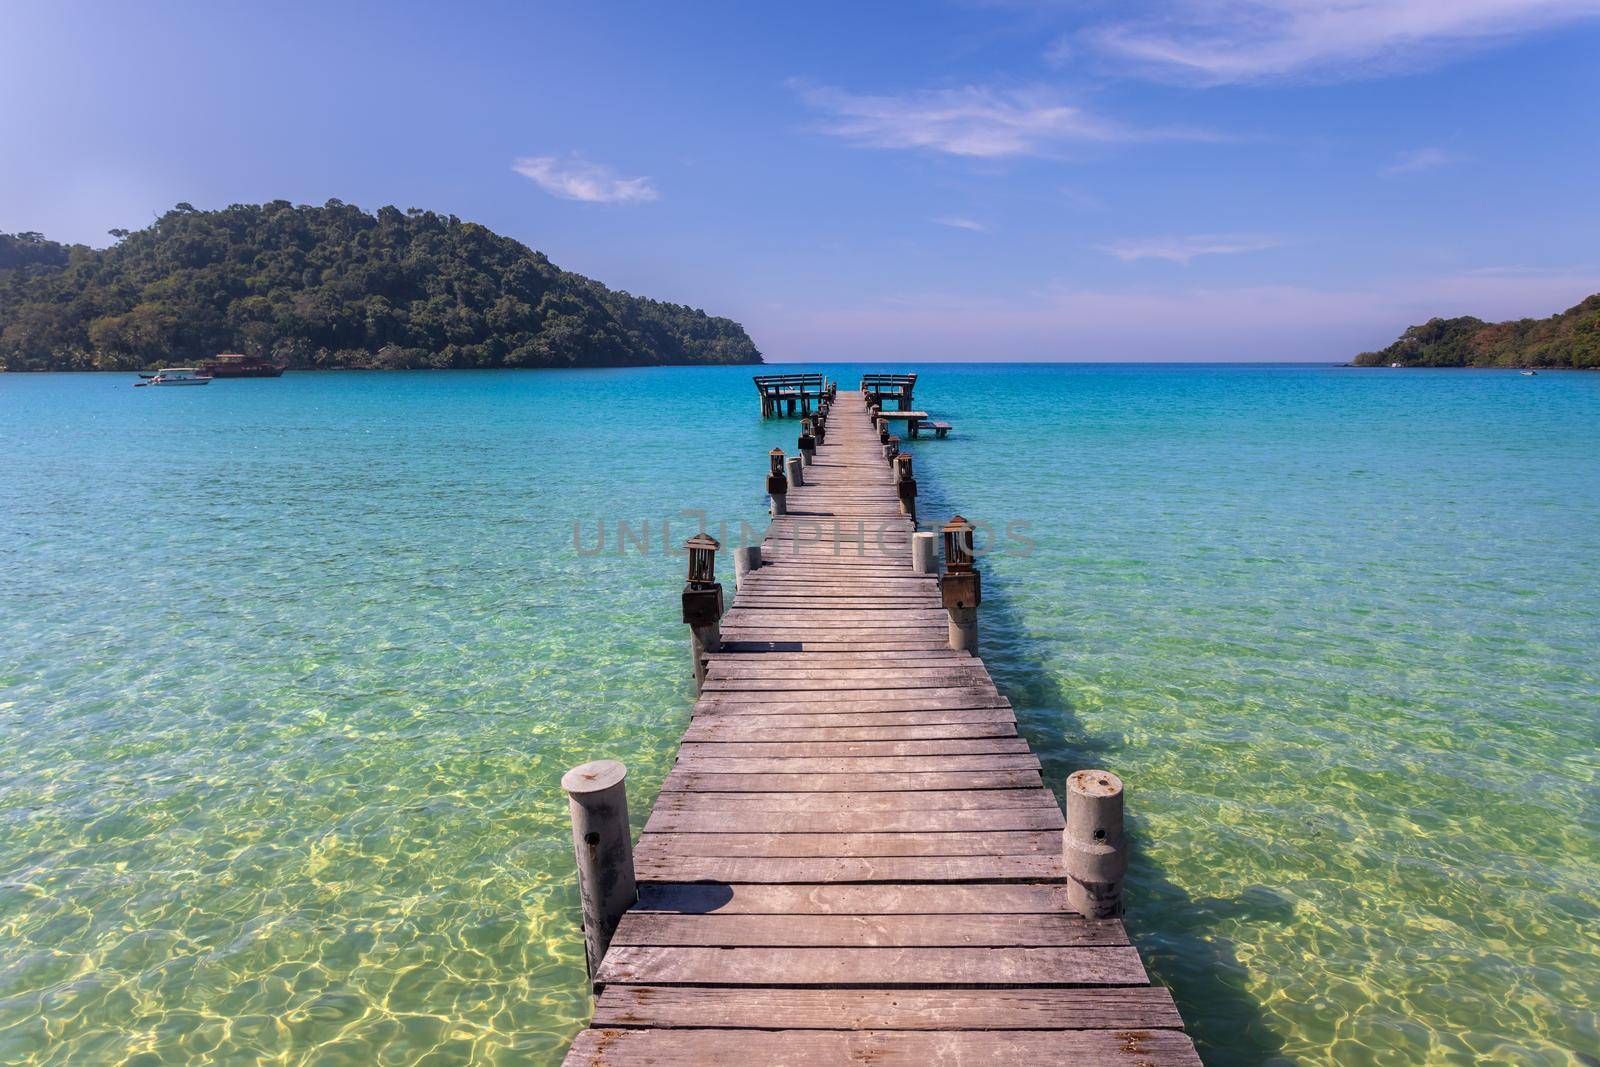 Beach wooden pier turquoise sea koh kood island , Thailand